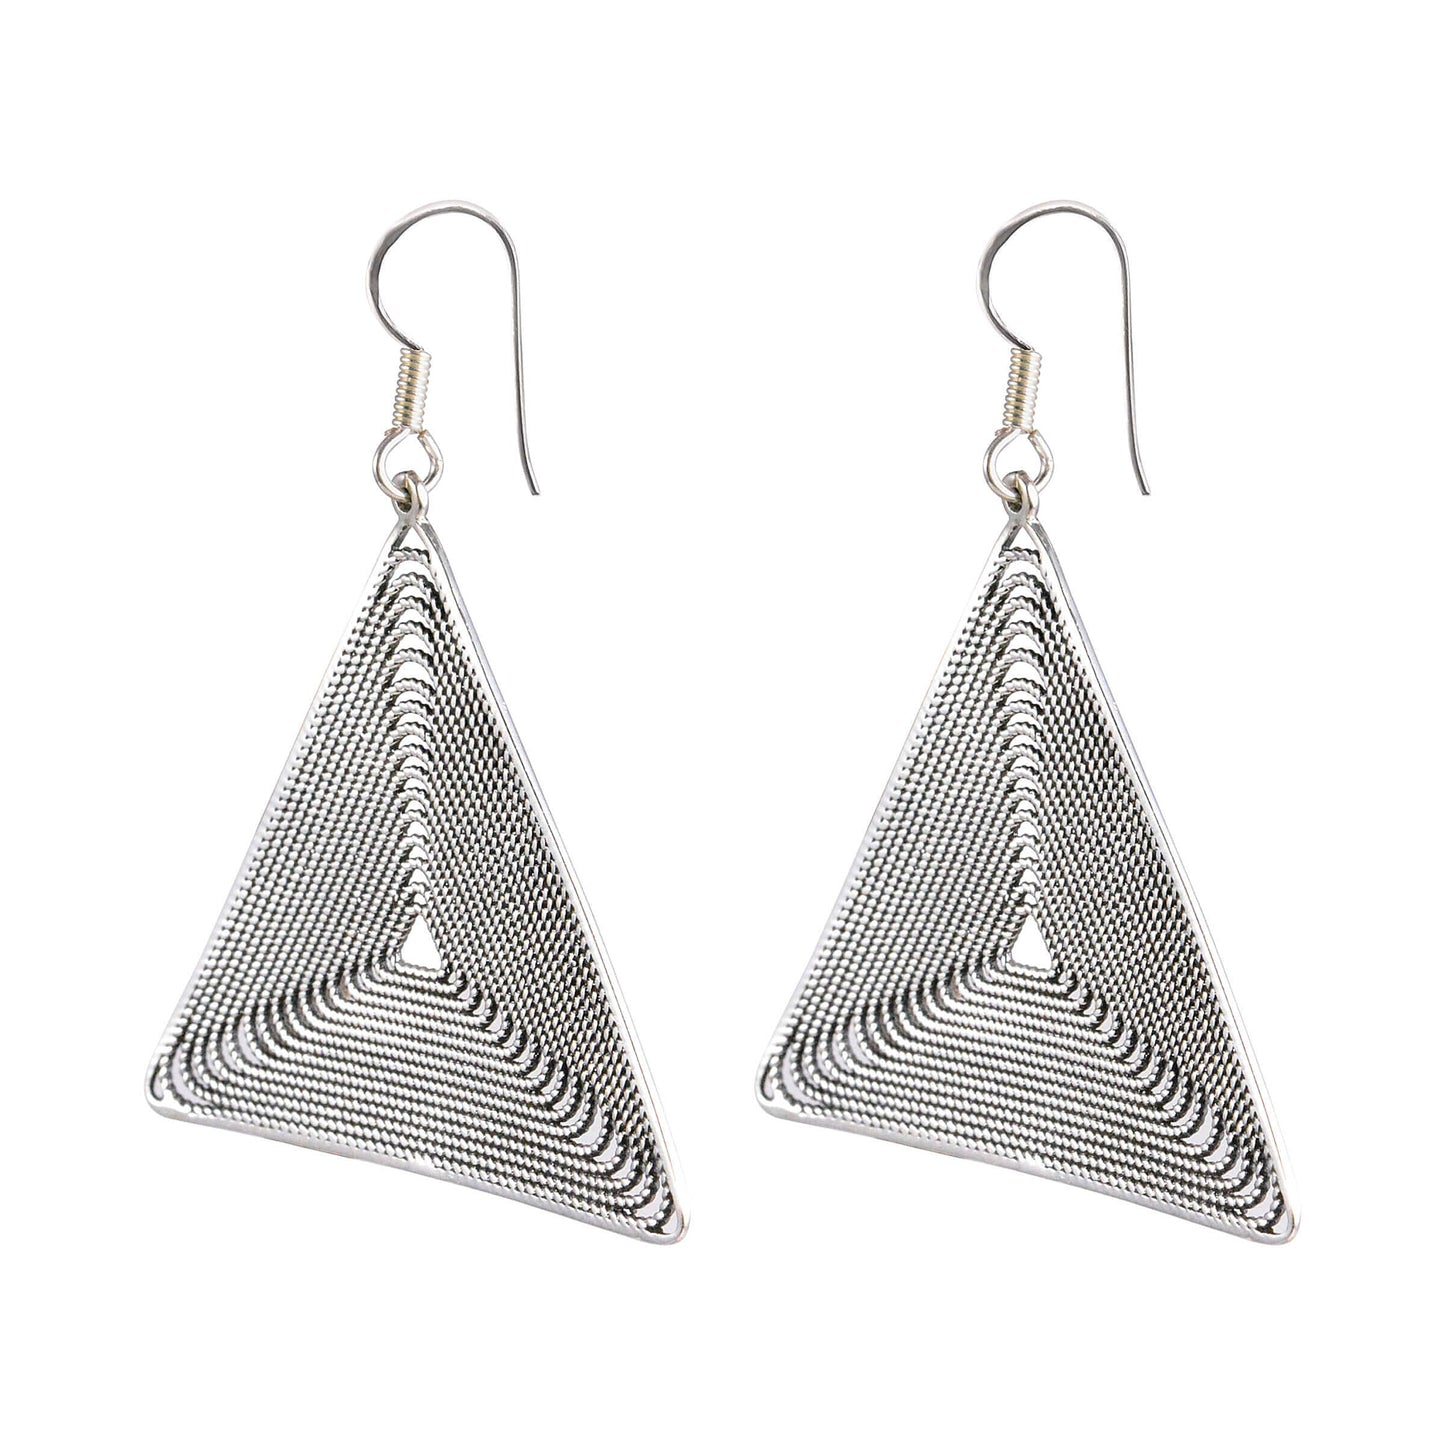 Tribal Earrings Silver Triangle Earrings 2